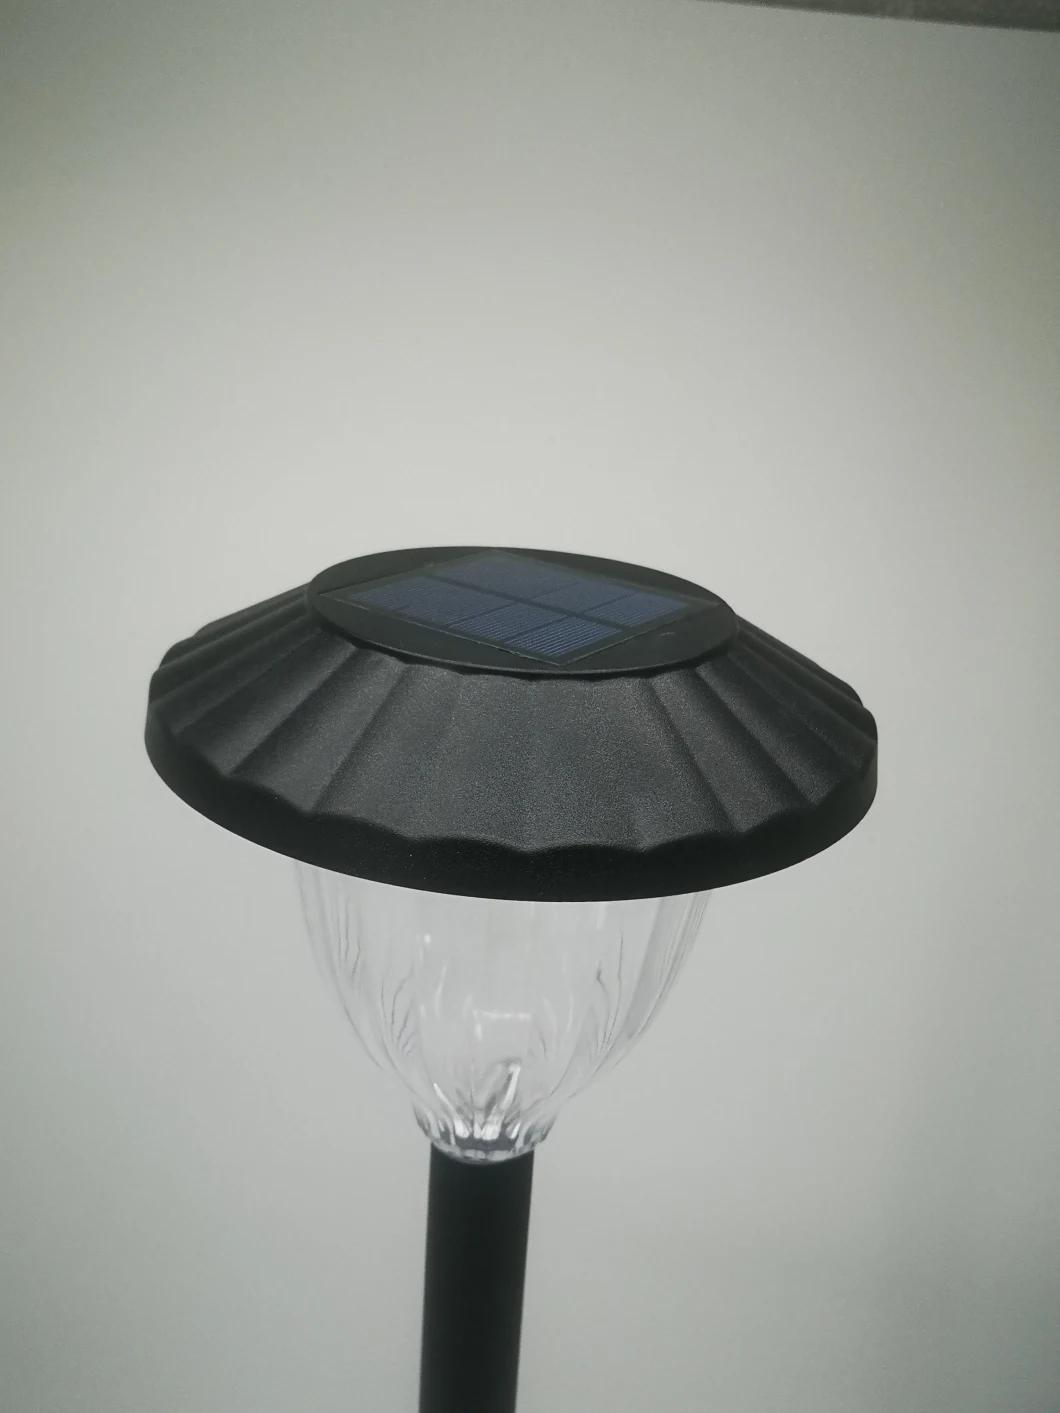 Garden Solor Lamp, Solor Pathway Garden Light Outdoor Lighting Solor Power